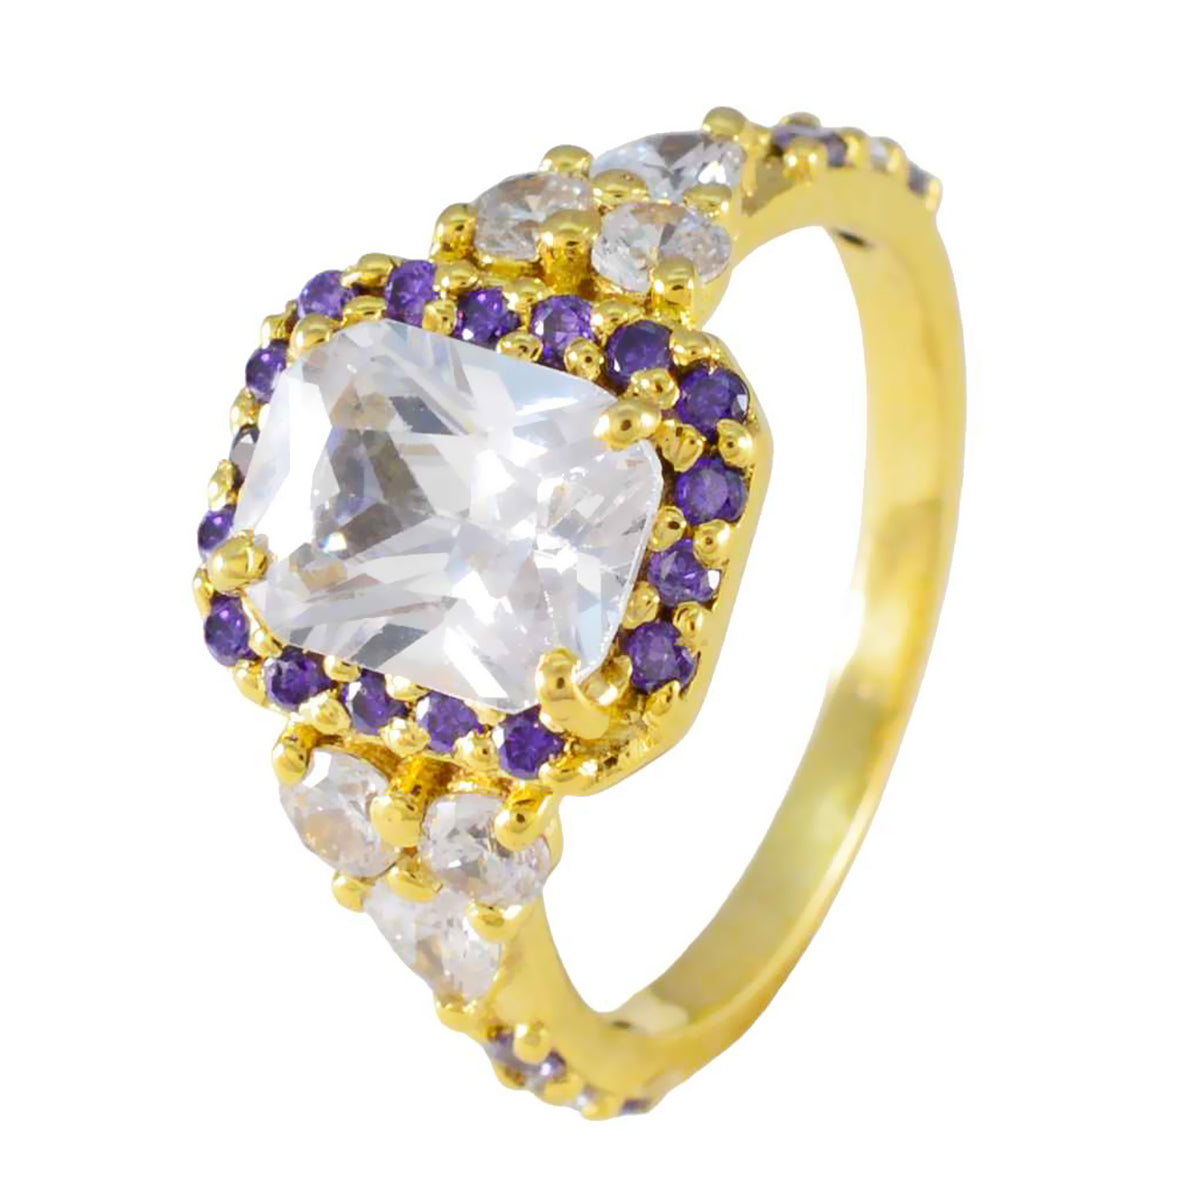 riyo miglior anello in argento con placcatura in oro giallo, pietra di ametista, forma ottagonale, montatura a punta, anello da cocktail con gioielli antichi